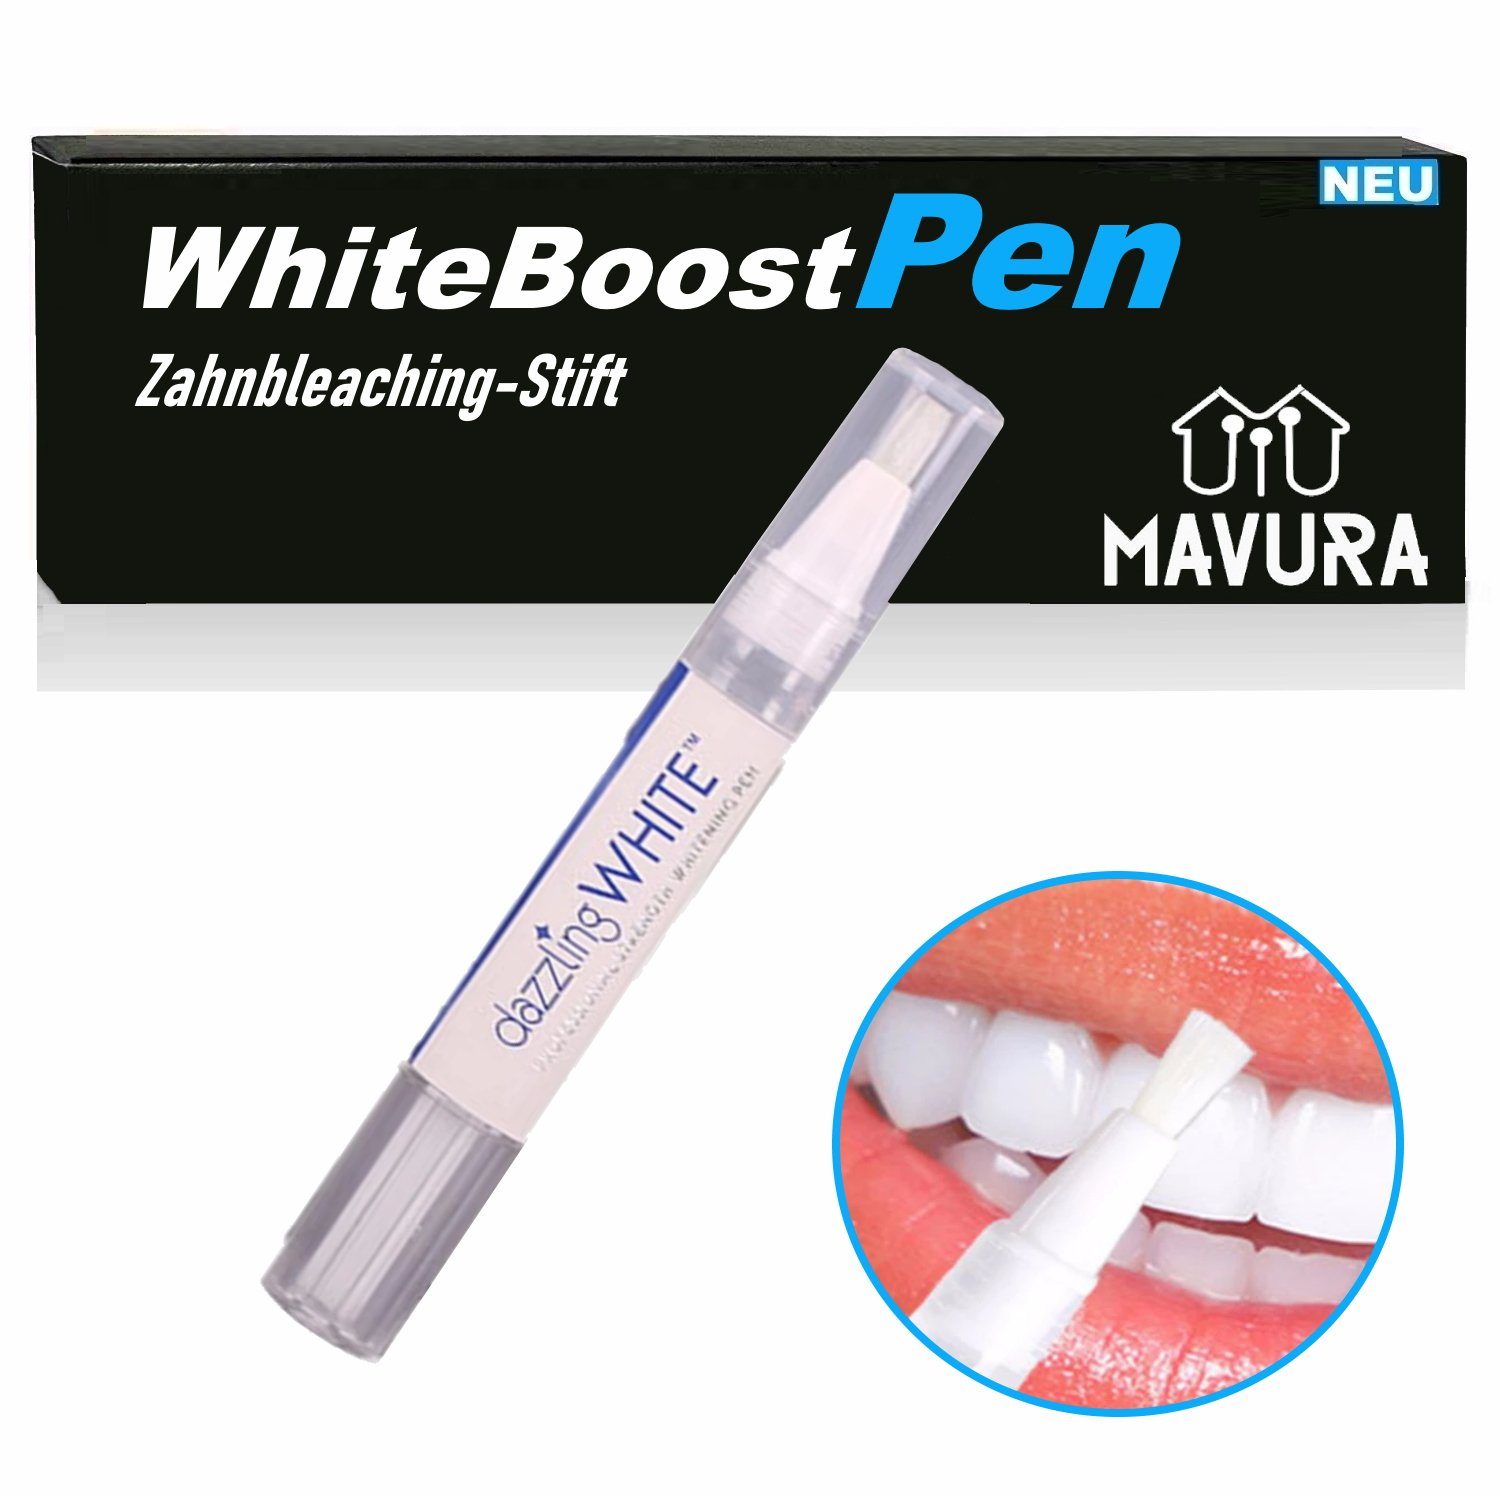 MAVURA Zahnbleaching-Stift WhiteBoostPen Zahnaufhellung Zahnweiß Stift  Bleaching, Pen Weiße Zähne Zahnweiss Aufhellung 2g (1kg/353)